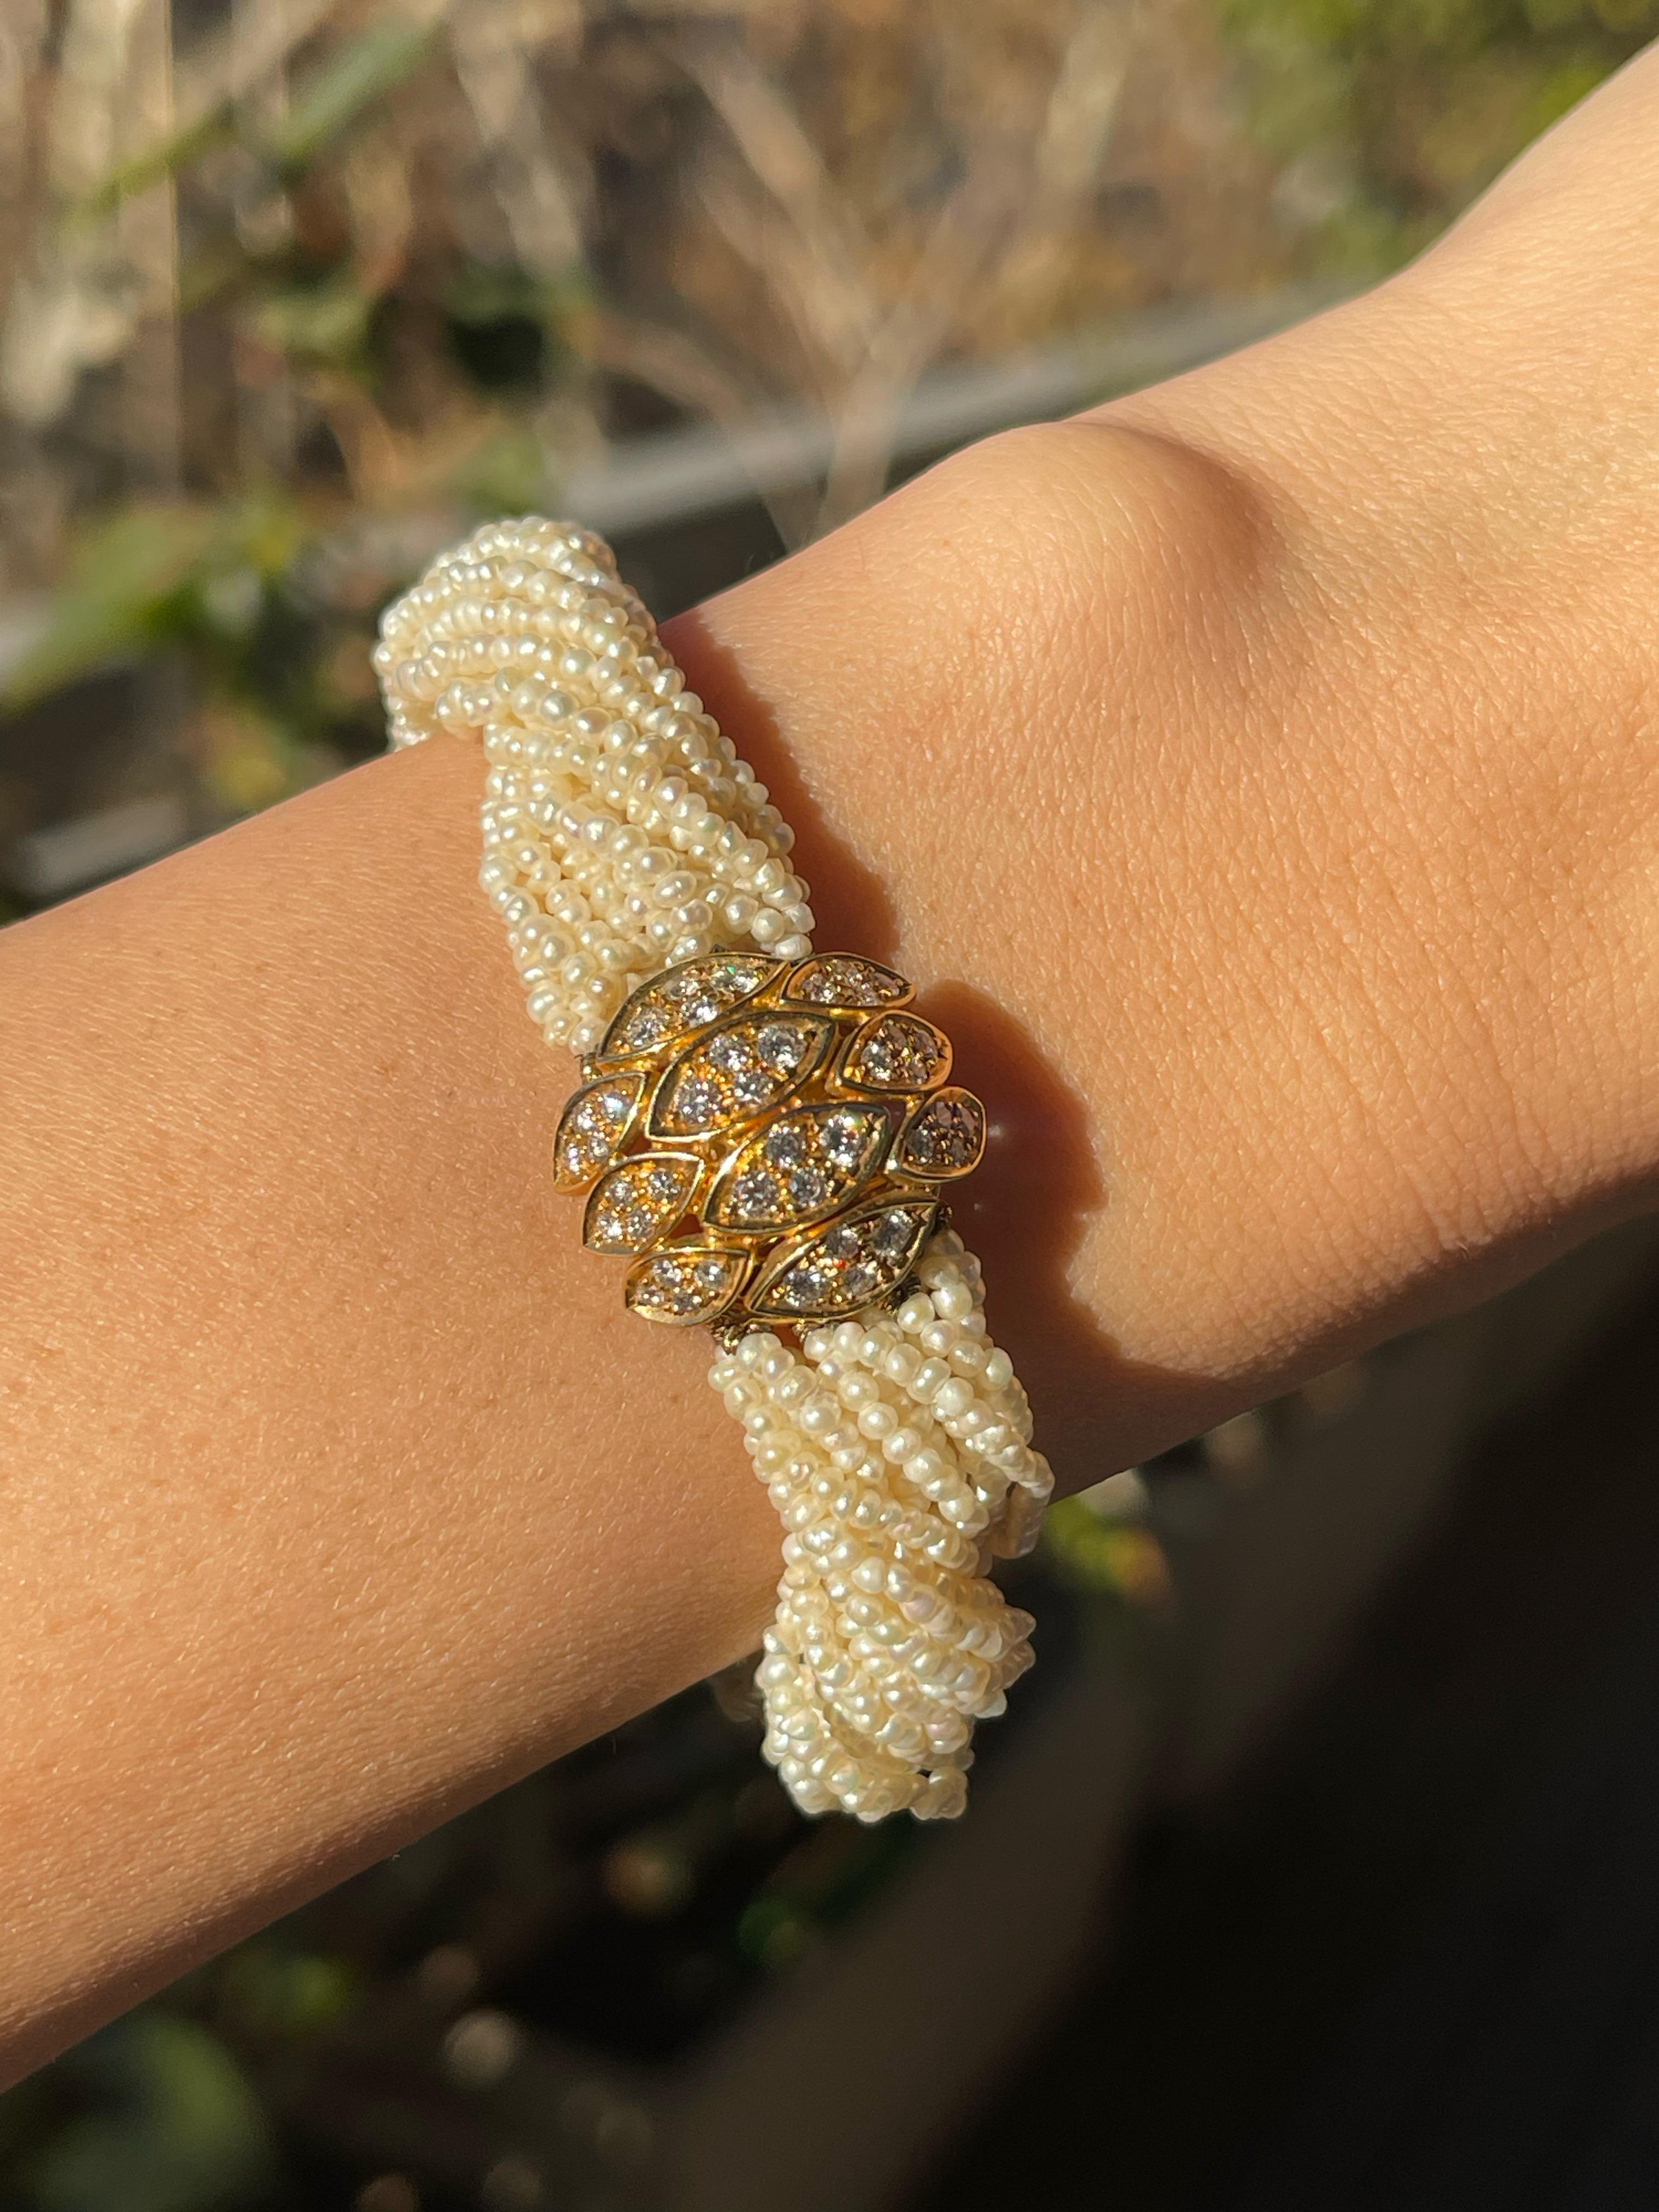 Dieses atemberaubende Vintage-Armband besteht aus 18 Strängen mit winzigen Perlen und einem  Schließe aus 18 Karat Gelbgold. 

Die schönen Perlen sind in ihrer Größe gut aufeinander abgestimmt und haben eine wunderschöne weiße, cremige Perlenfarbe,